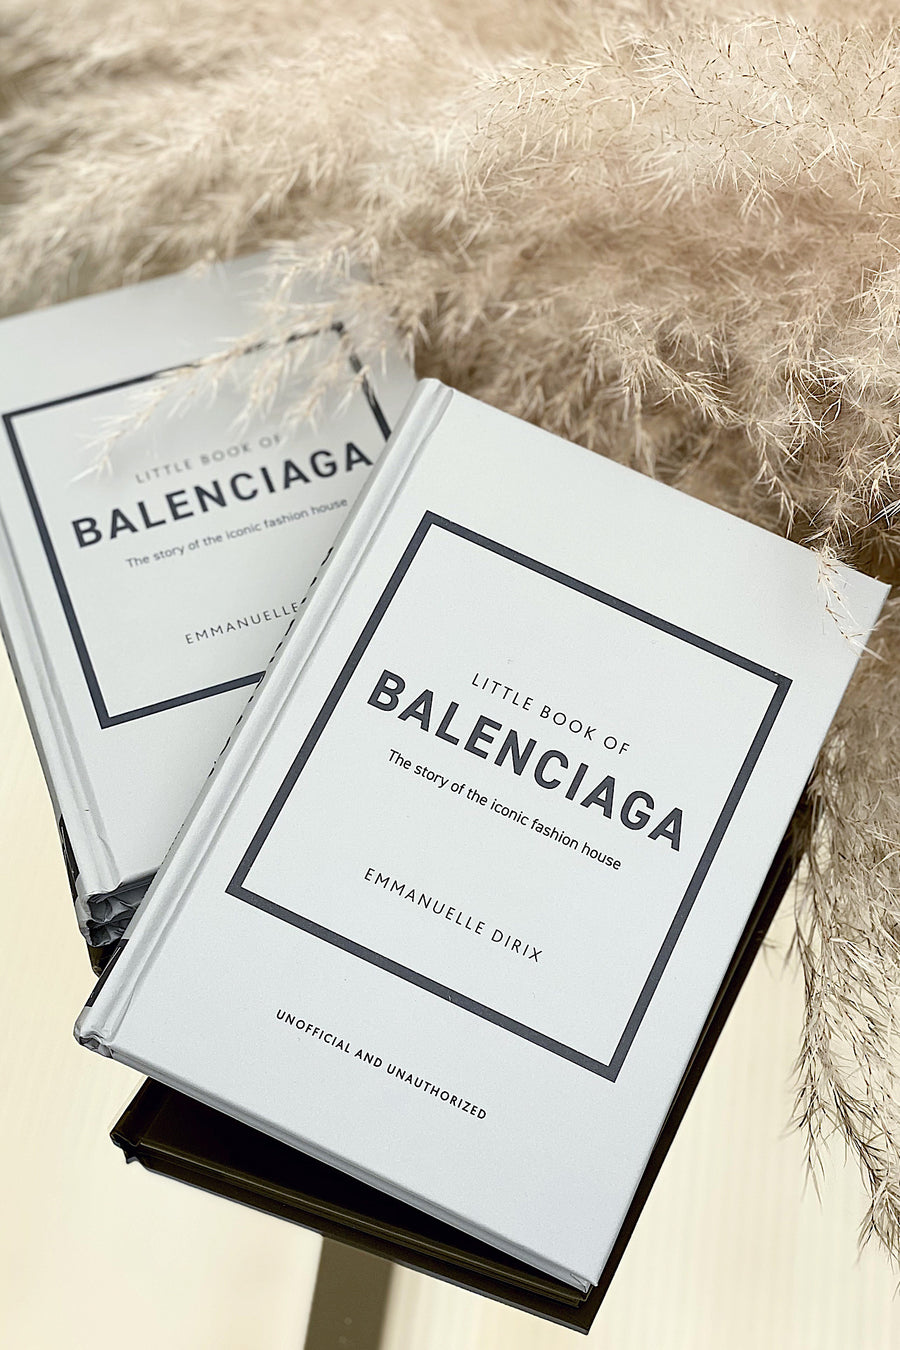 Little Book of Balenciaga